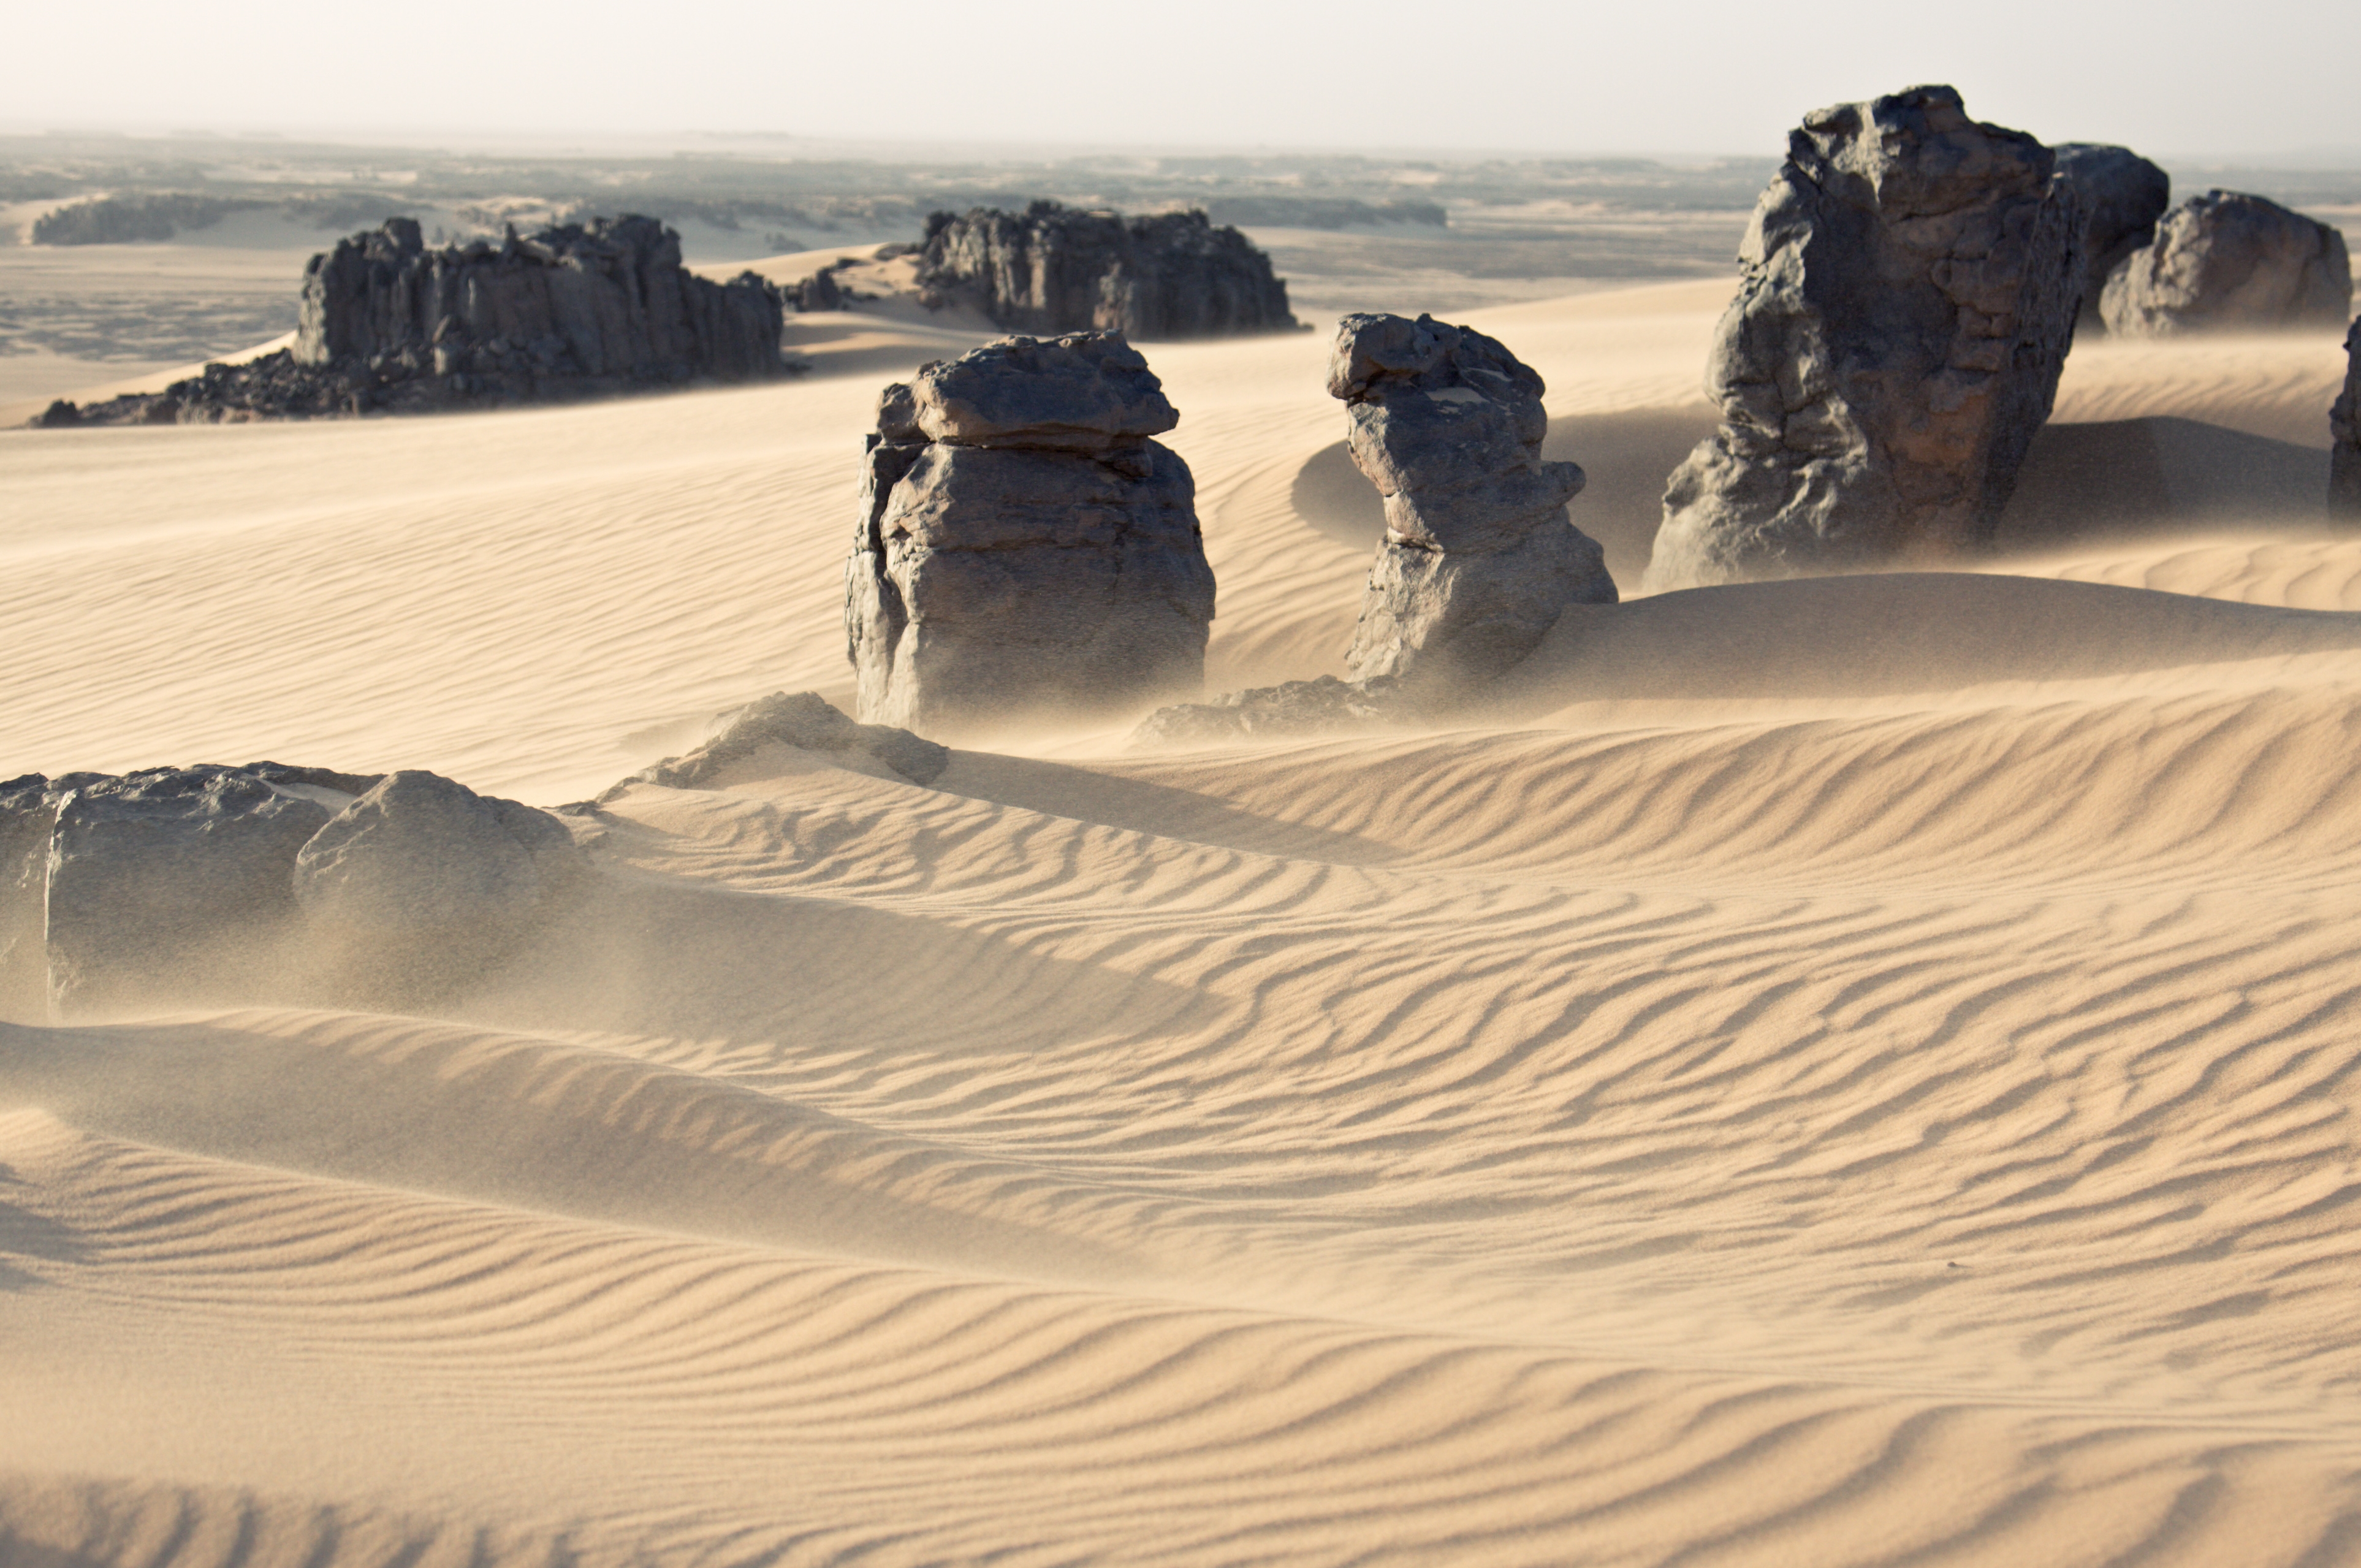 android earth, desert, africa, algeria, dune, dust, landscape, sahara, sand, tassili n'ajjer, wind